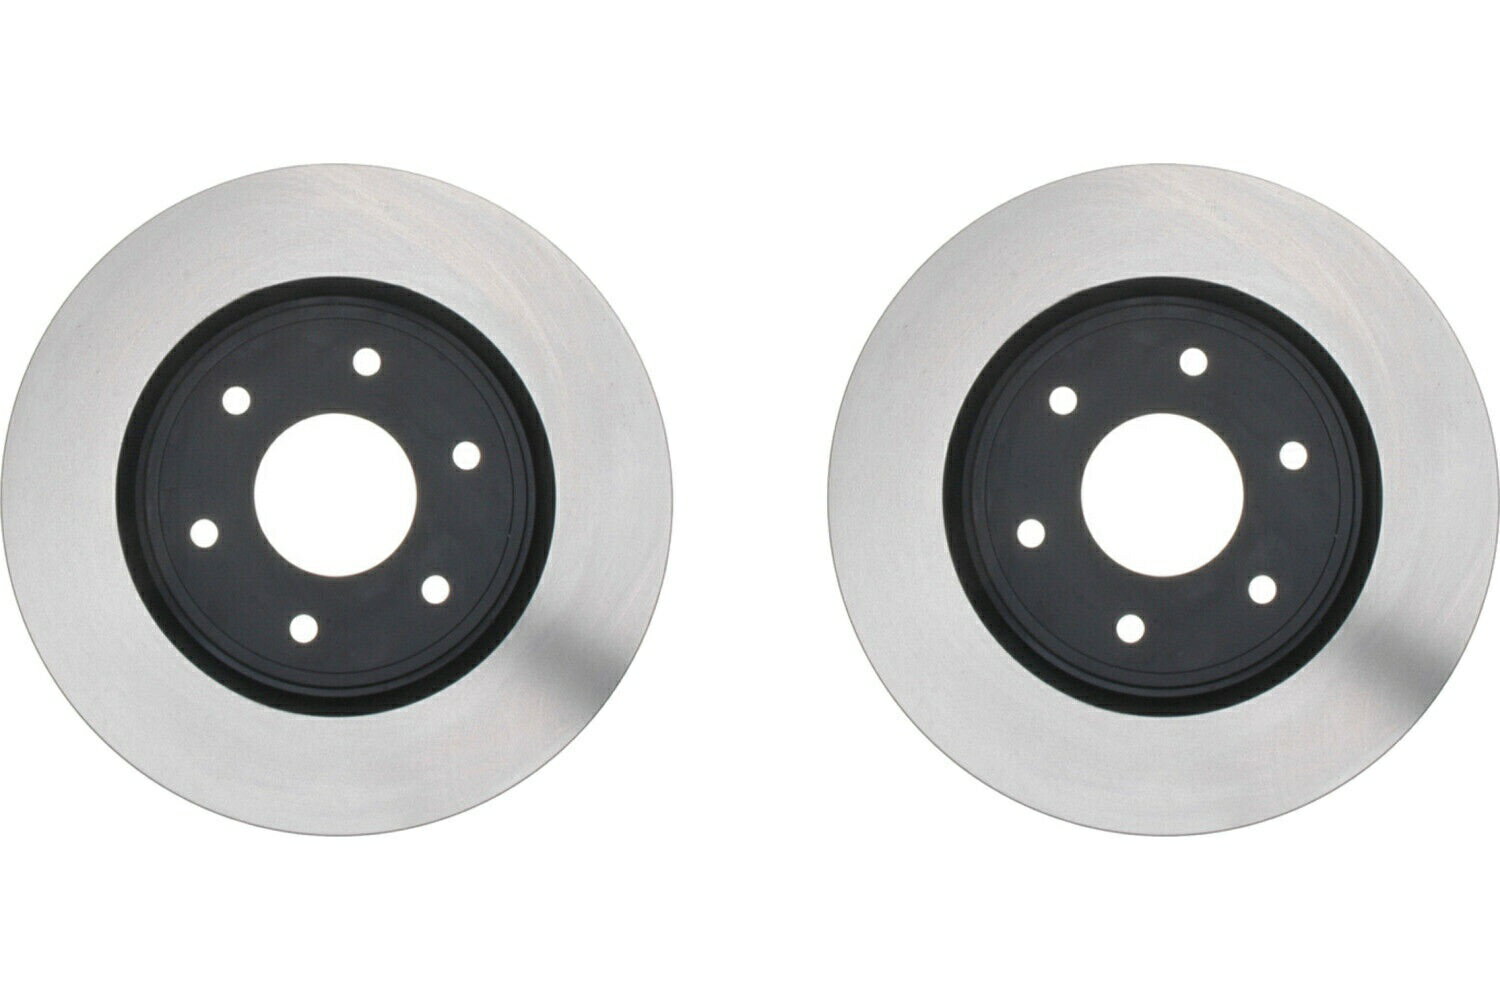 Front KIT Raybestos Disc Brake Rotor for 2006-2007 INFINITI QX56 (65931)カテゴリbrake disc rotor状態海外直輸入品 新品メーカー車種発送詳細 送料無料 （※北海道、沖縄、離島は省く）商品詳細輸入商品の為、英語表記となります。Condition: NewBrand: RaybestosManufacturer Part Number: Kit-65931Vehicle Position: FrontLabel: Specialty - TruckProduct Type: Factory ReplacementType: Disc Brake RotorDiscard Thickness: 1.122,28.500Nominal Thickness: 1.182,30.000Overall Height: 1.698,43.150Outside Diameter: 13.771,349.800Mounting Bolt Hole Quantity: 6Solid Or Vented Type Rotor: VentedMounting Bolt Hole Circle Diameter: 139.700,5.500Mounting Bolt Hole Diameter: 139.700,5.500Stud/Lug Hole Quantity: 6Conventional Or Drum-In-Hat Type Rotor: ConventionalInterchange Part Number: 120.42094 120.42094CRY 121.42094 126.42094CSL 126.42094CSRReplaces Part Numbers: 126.42094SL 126.42094SR 127.42094L 127.42094R 128.42094CL 145724Replacement Part Numbers: 128.42094CR 128.42094L 128.42094R 14-31465 31465 320.42094 326367Replace Part Numbers: 40011488 40206ZC60A 44593 6620744 980563 980563R 980563RGSReplaces Parts: AX900418 BR31465 BR900418 PRT5724 QBRR572 YH145724 YH145724C YH14《ご注文前にご確認ください》■海外輸入品の為、NC・NRでお願い致します。■取り付け説明書は基本的に付属しておりません。お取付に関しましては専門の業者様とご相談お願いいたします。■通常2〜4週間でのお届けを予定をしておりますが、天候、通関、国際事情により輸送便の遅延が発生する可能性や、仕入・輸送費高騰や通関診査追加等による価格のご相談の可能性もございますことご了承いただいております。■海外メーカーの注文状況次第では在庫切れの場合もございます。その場合は弊社都合にてキャンセルとなります。■配送遅延、商品違い等によってお客様に追加料金が発生した場合や取付け時に必要な加工費や追加部品等の、商品代金以外の弊社へのご請求には一切応じかねます。■弊社は海外パーツの輸入販売業のため、製品のお取り付けや加工についてのサポートは行っておりません。専門店様と解決をお願いしております。■大型商品に関しましては、配送会社の規定により個人宅への配送が困難な場合がございます。その場合は、会社や倉庫、最寄りの営業所での受け取りをお願いする場合がございます。■輸入消費税が追加課税される場合もございます。その場合はお客様側で輸入業者へ輸入消費税のお支払いのご負担をお願いする場合がございます。■商品説明文中に英語にて”保証”関する記載があっても適応はされませんのでご了承ください。■海外倉庫から到着した製品を、再度国内で検品を行い、日本郵便または佐川急便にて発送となります。■初期不良の場合は商品到着後7日以内にご連絡下さいませ。■輸入商品のためイメージ違いやご注文間違い当のお客様都合ご返品はお断りをさせていただいておりますが、弊社条件を満たしている場合はご購入金額の30％の手数料を頂いた場合に限りご返品をお受けできる場合もございます。(ご注文と同時に商品のお取り寄せが開始するため)（30％の内訳は、海外返送費用・関税・消費全負担分となります）■USパーツの輸入代行も行っておりますので、ショップに掲載されていない商品でもお探しする事が可能です。お気軽にお問い合わせ下さいませ。[輸入お取り寄せ品においてのご返品制度・保証制度等、弊社販売条件ページに詳細の記載がございますのでご覧くださいませ]&nbsp;